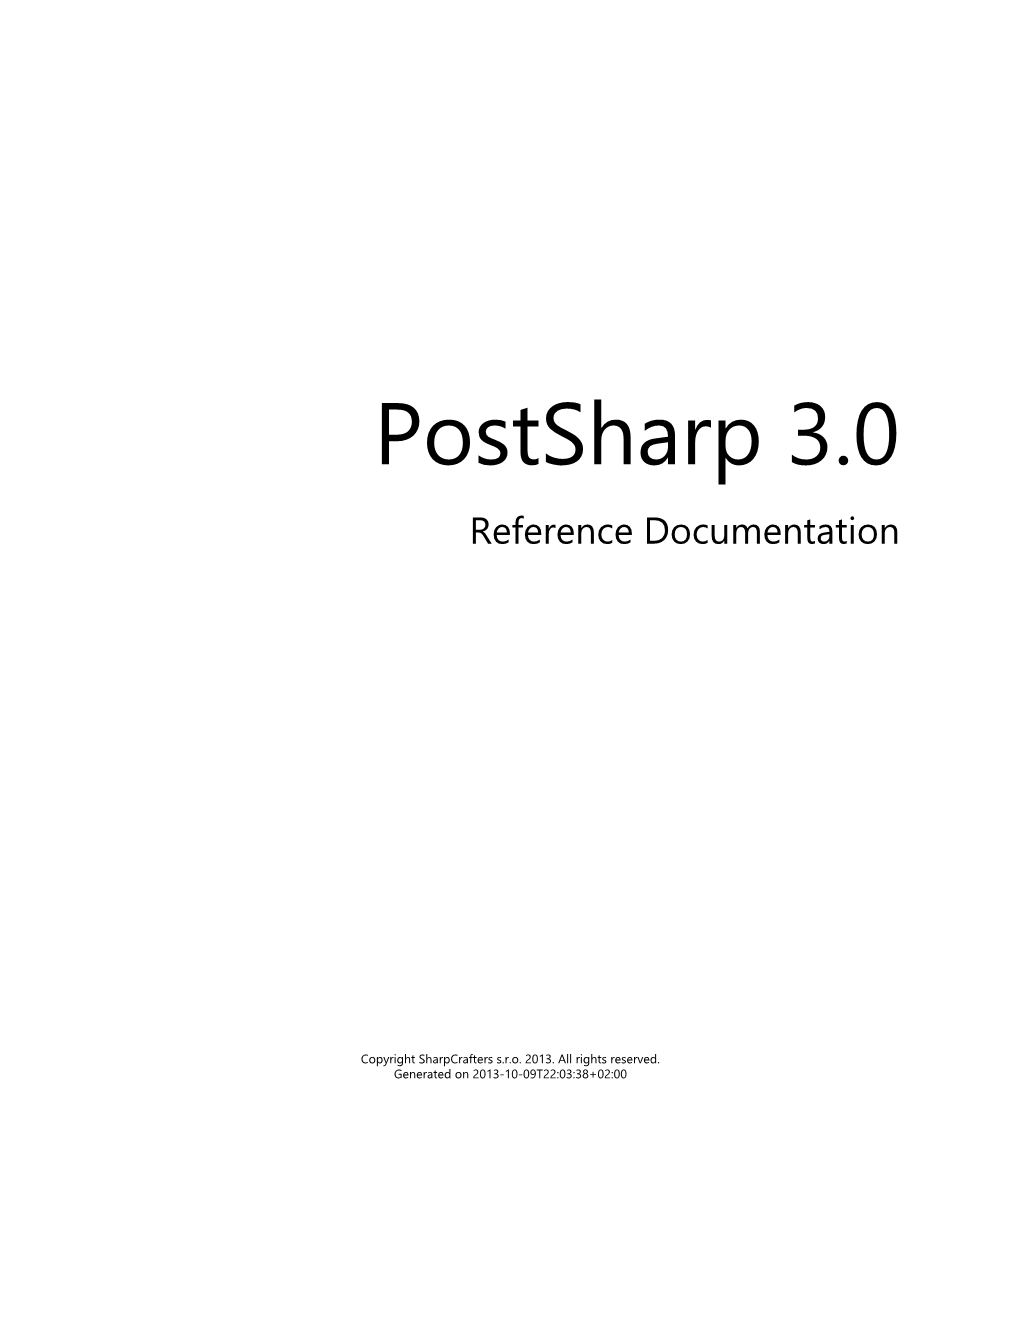 Postsharp 3.0 Documentation